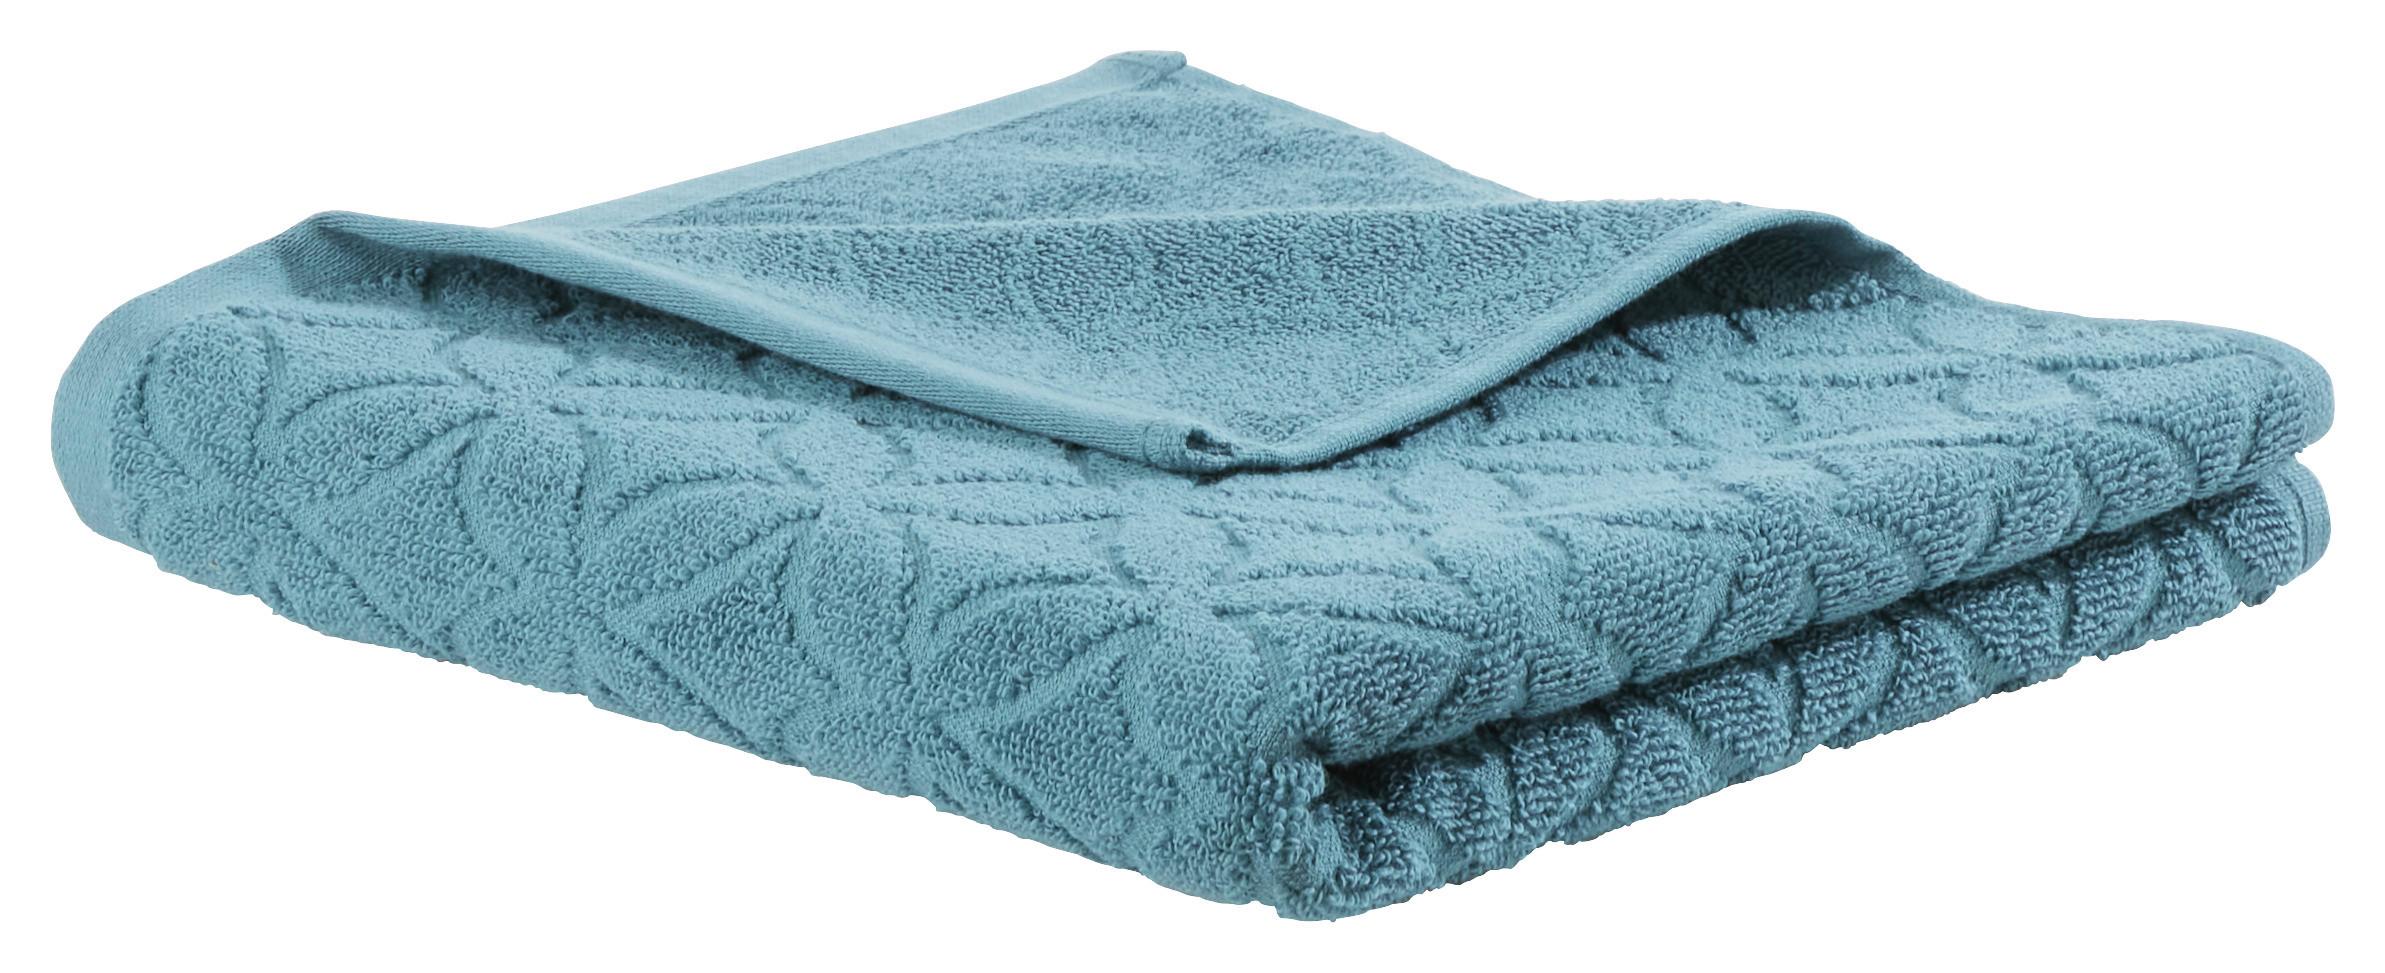 Handtuch Naime in Blau ca. 50x100cm - Blau, LIFESTYLE, Textil (50/100cm) - Modern Living